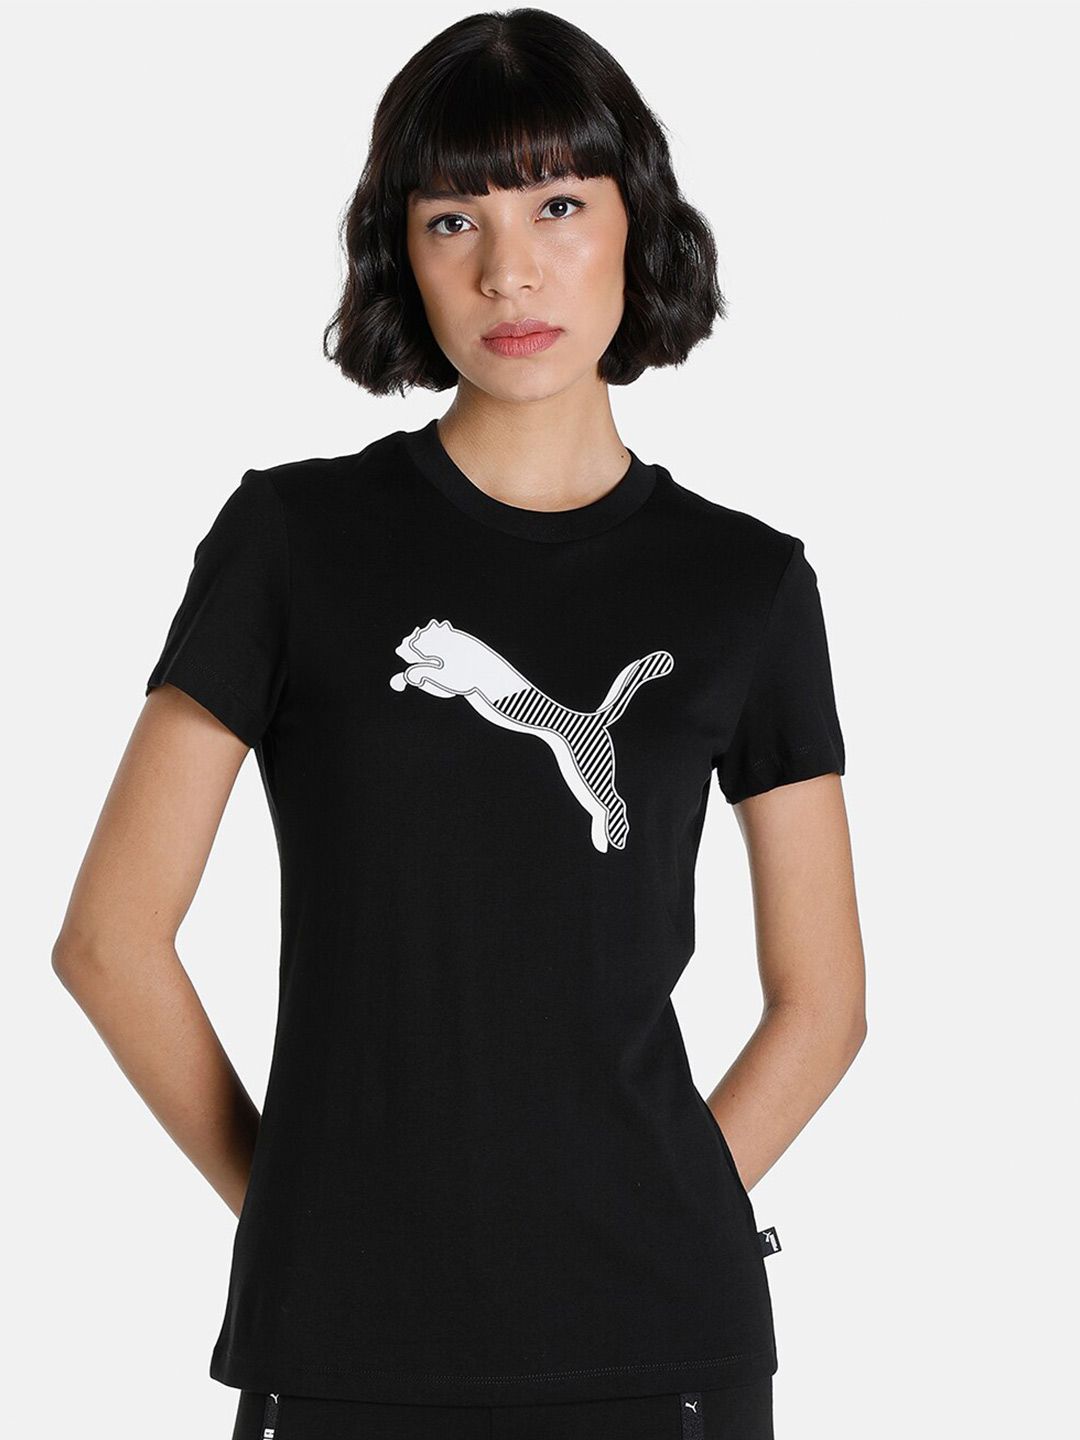 Puma Women Black & White Power Graphic T-Shirt Price in India